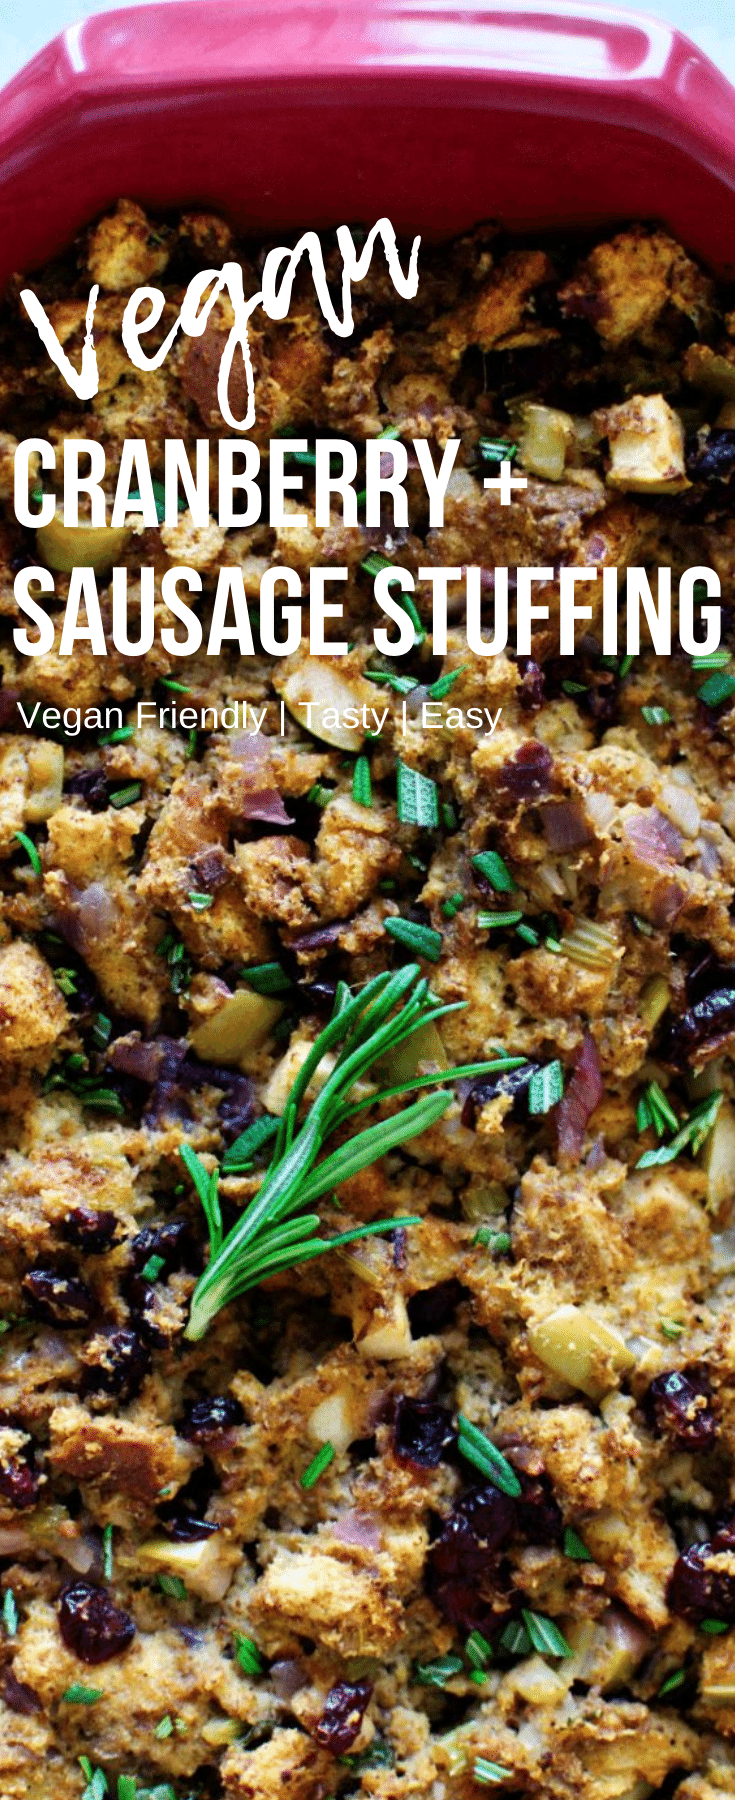 Vegan Cranberry Sausage Stuffing- Pinterest